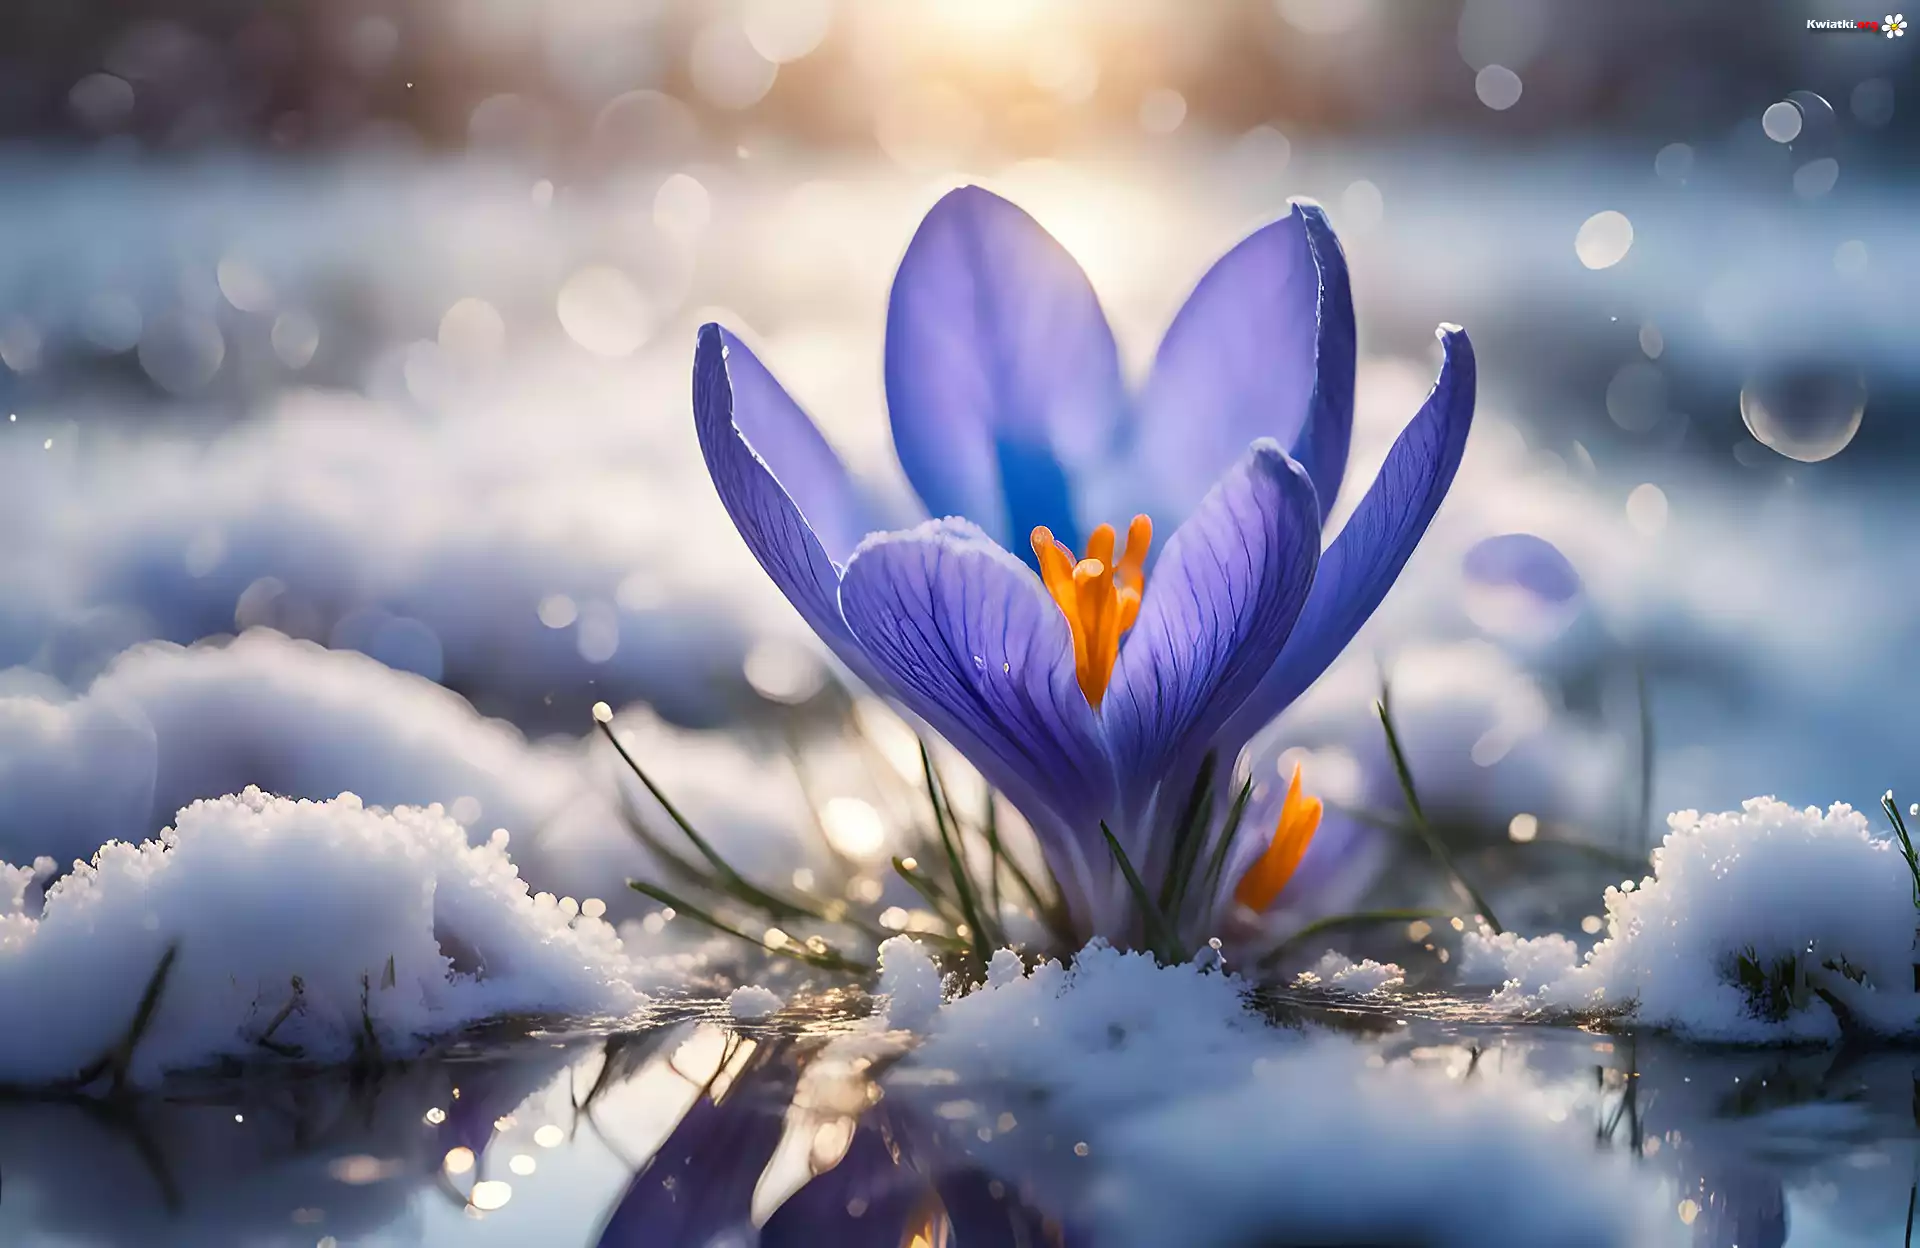 Fioletowy, Krokus, Kwiat, Śnieg